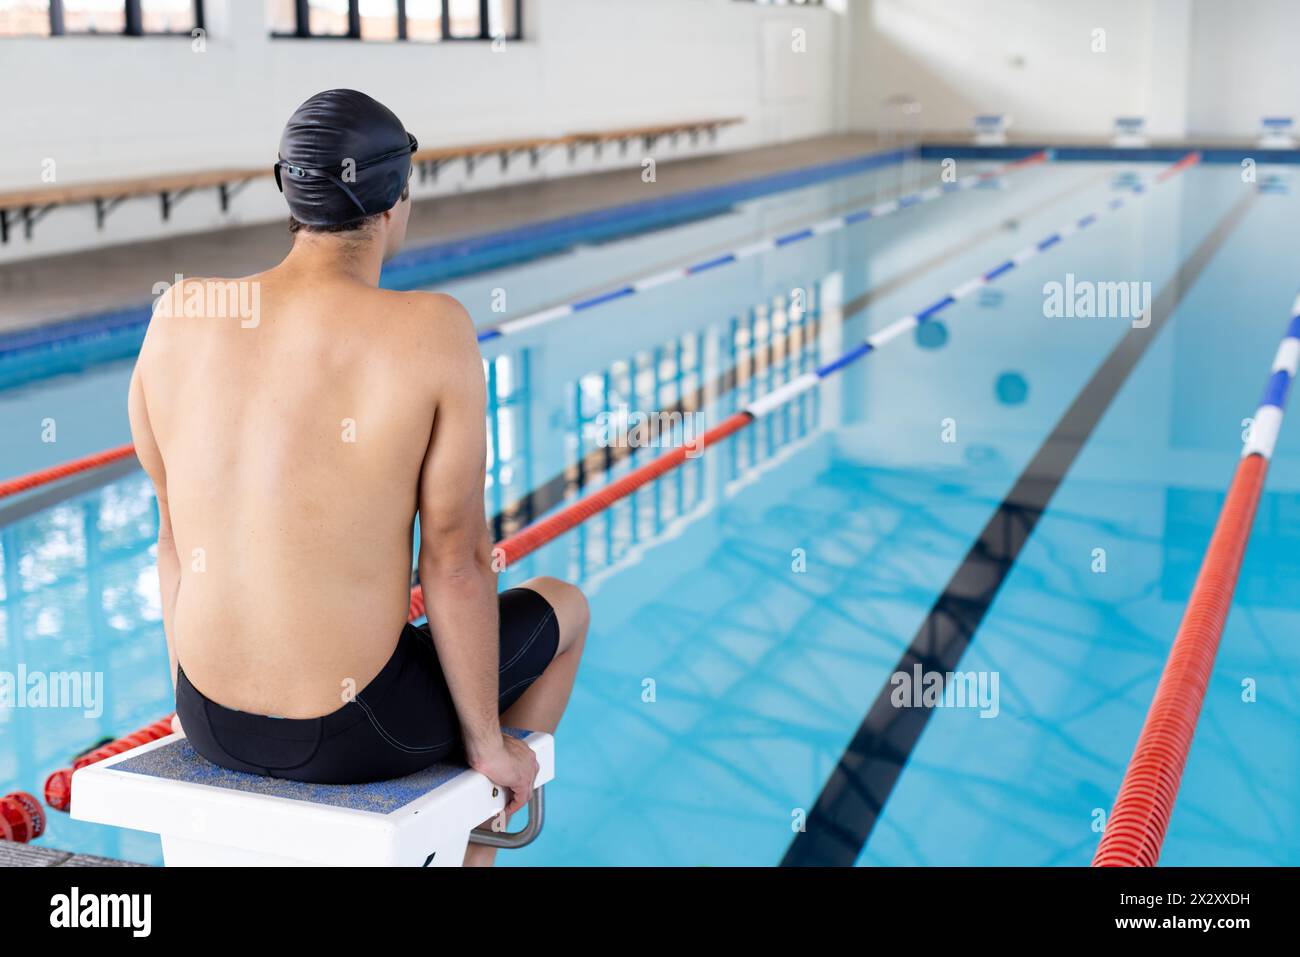 Jeune nageur masculin caucasien assis au bord de la piscine à l'intérieur, se préparant à plonger, copier l'espace Banque D'Images